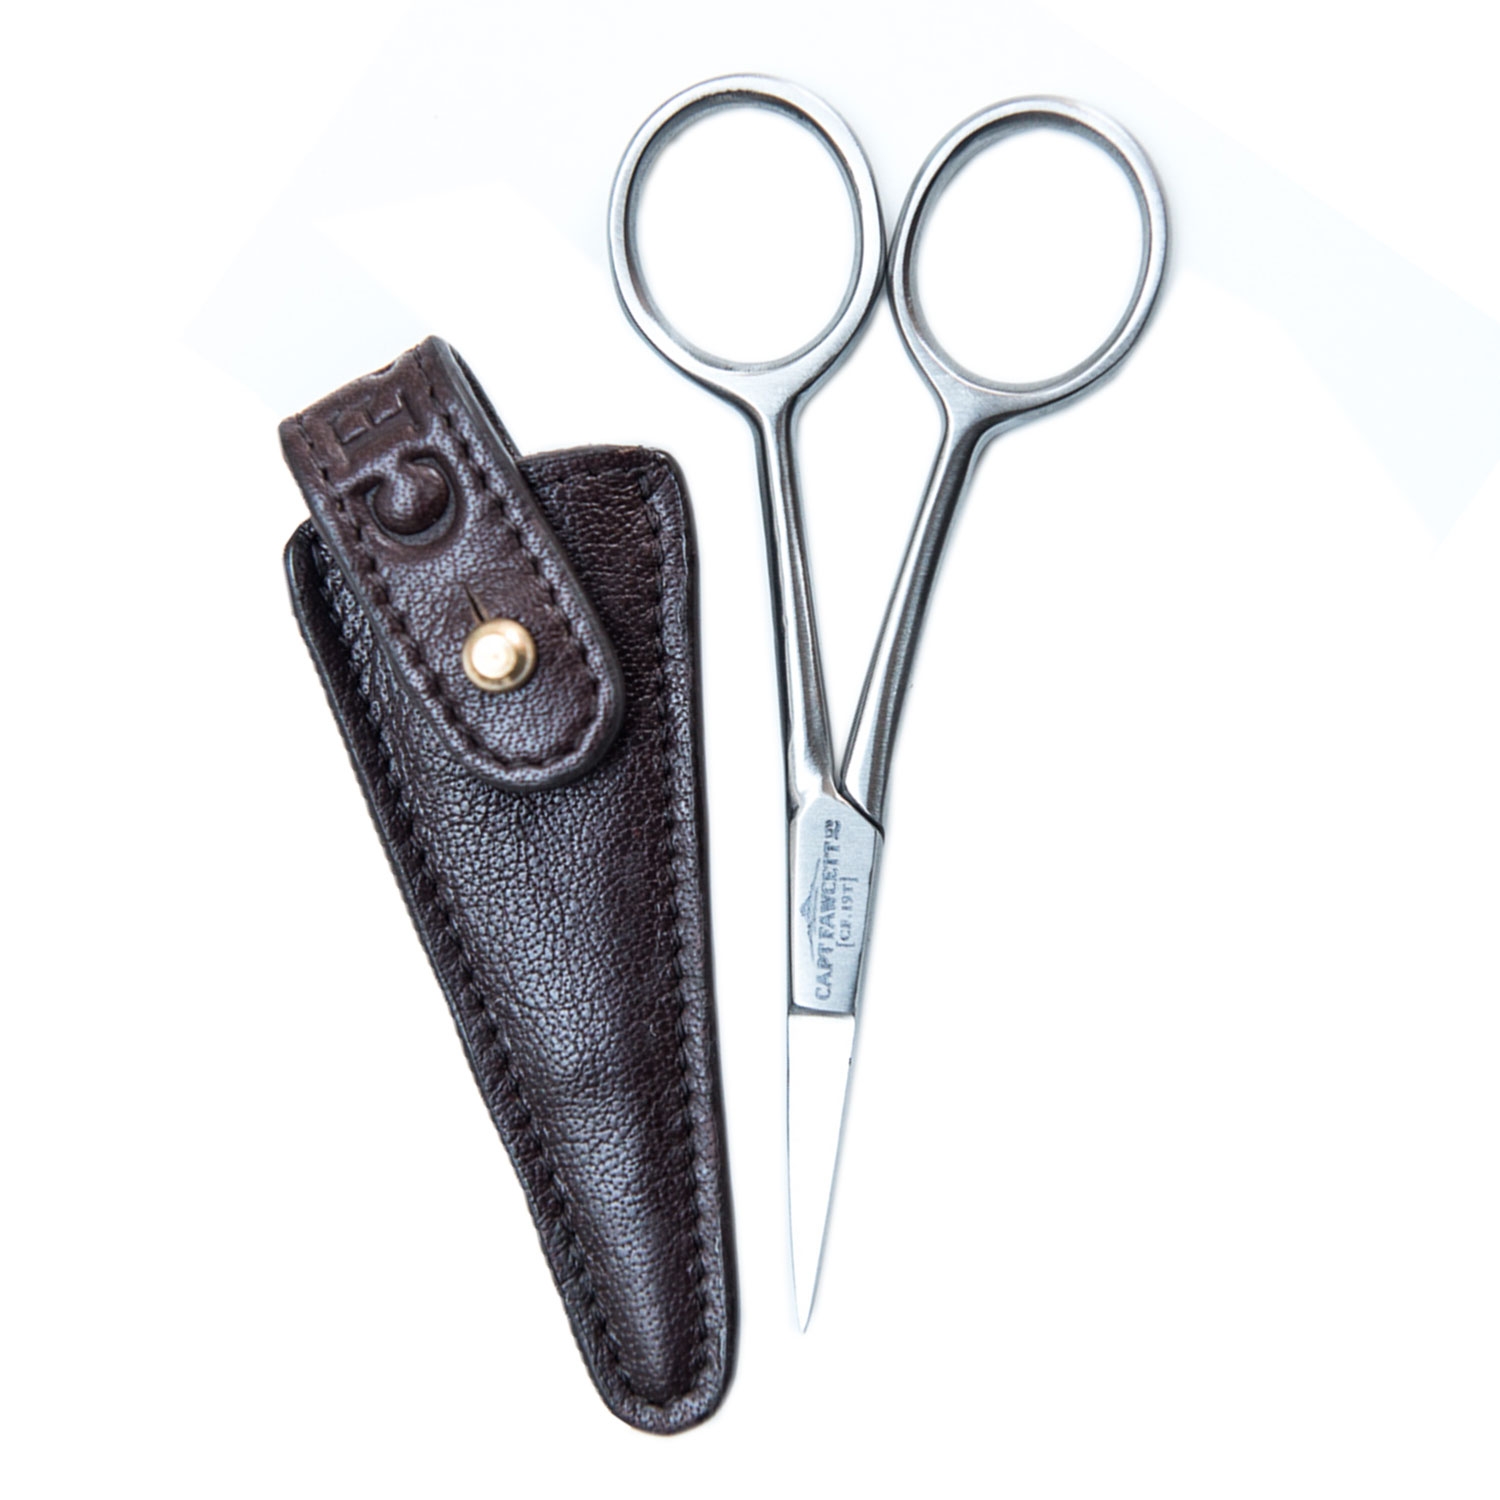 Produktbild von Capt. Fawcett Tools - Grooming Scissors